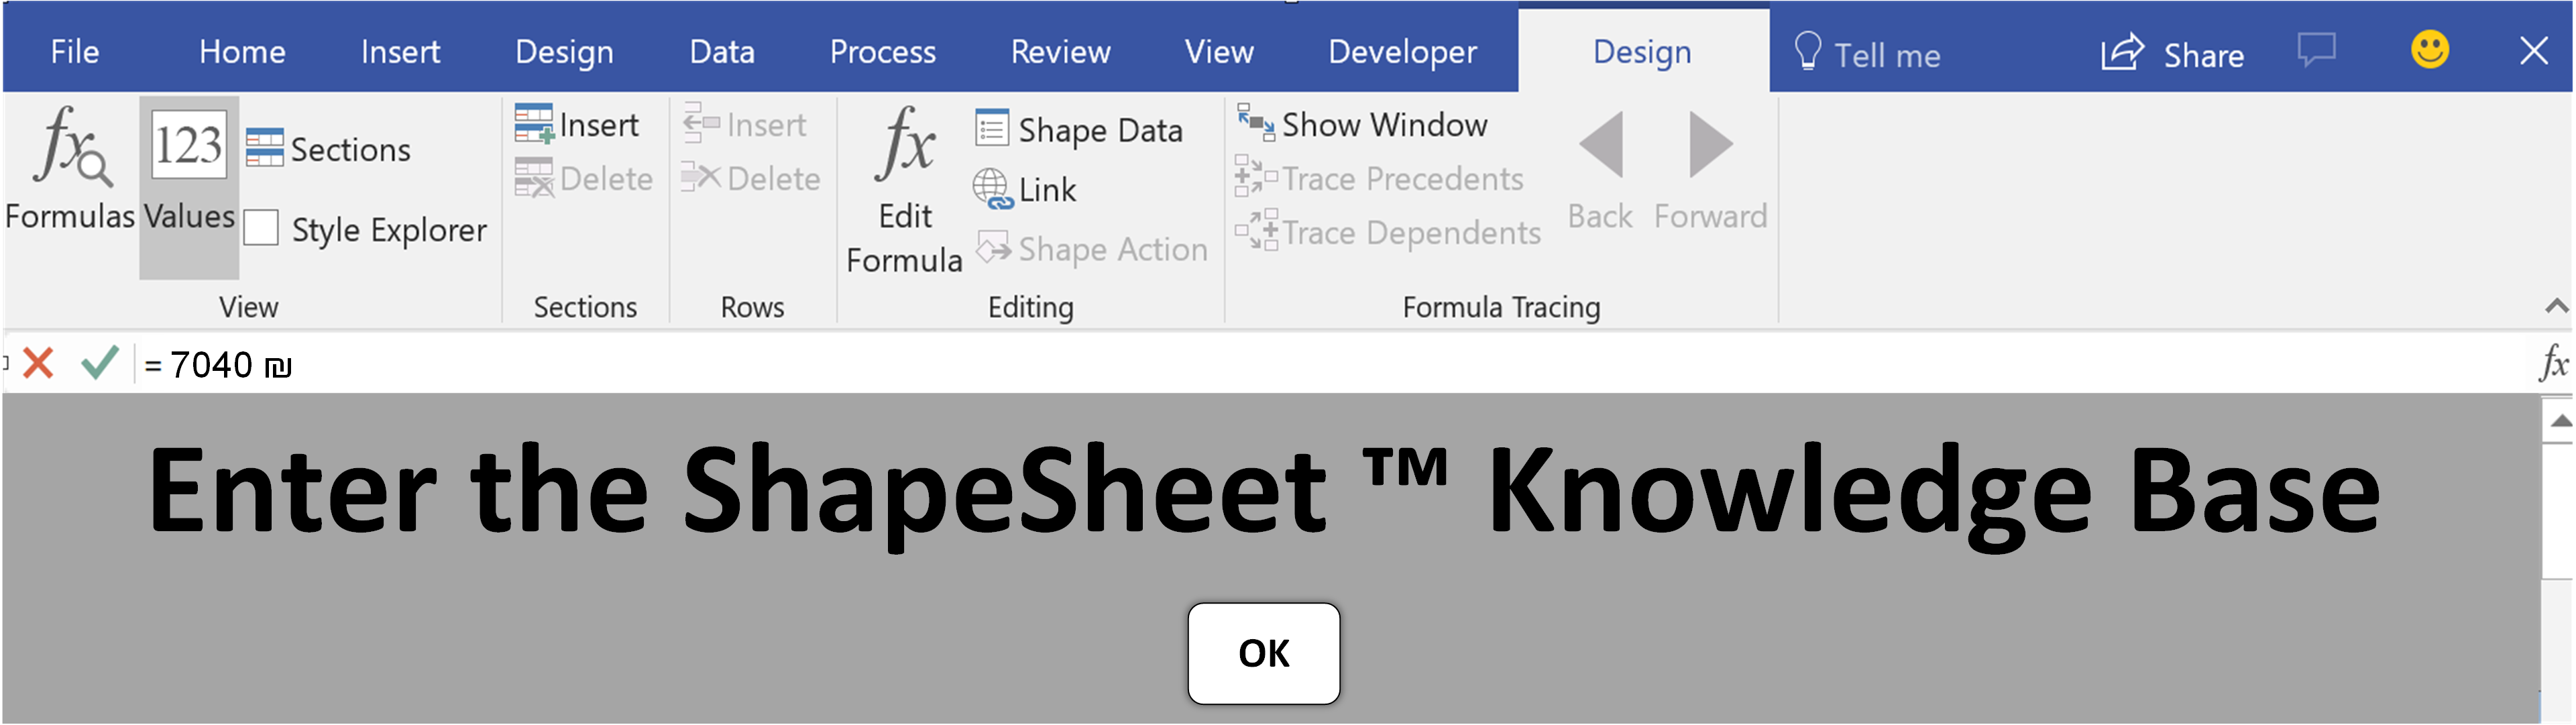 ShapeSheet™ Knowledge Base